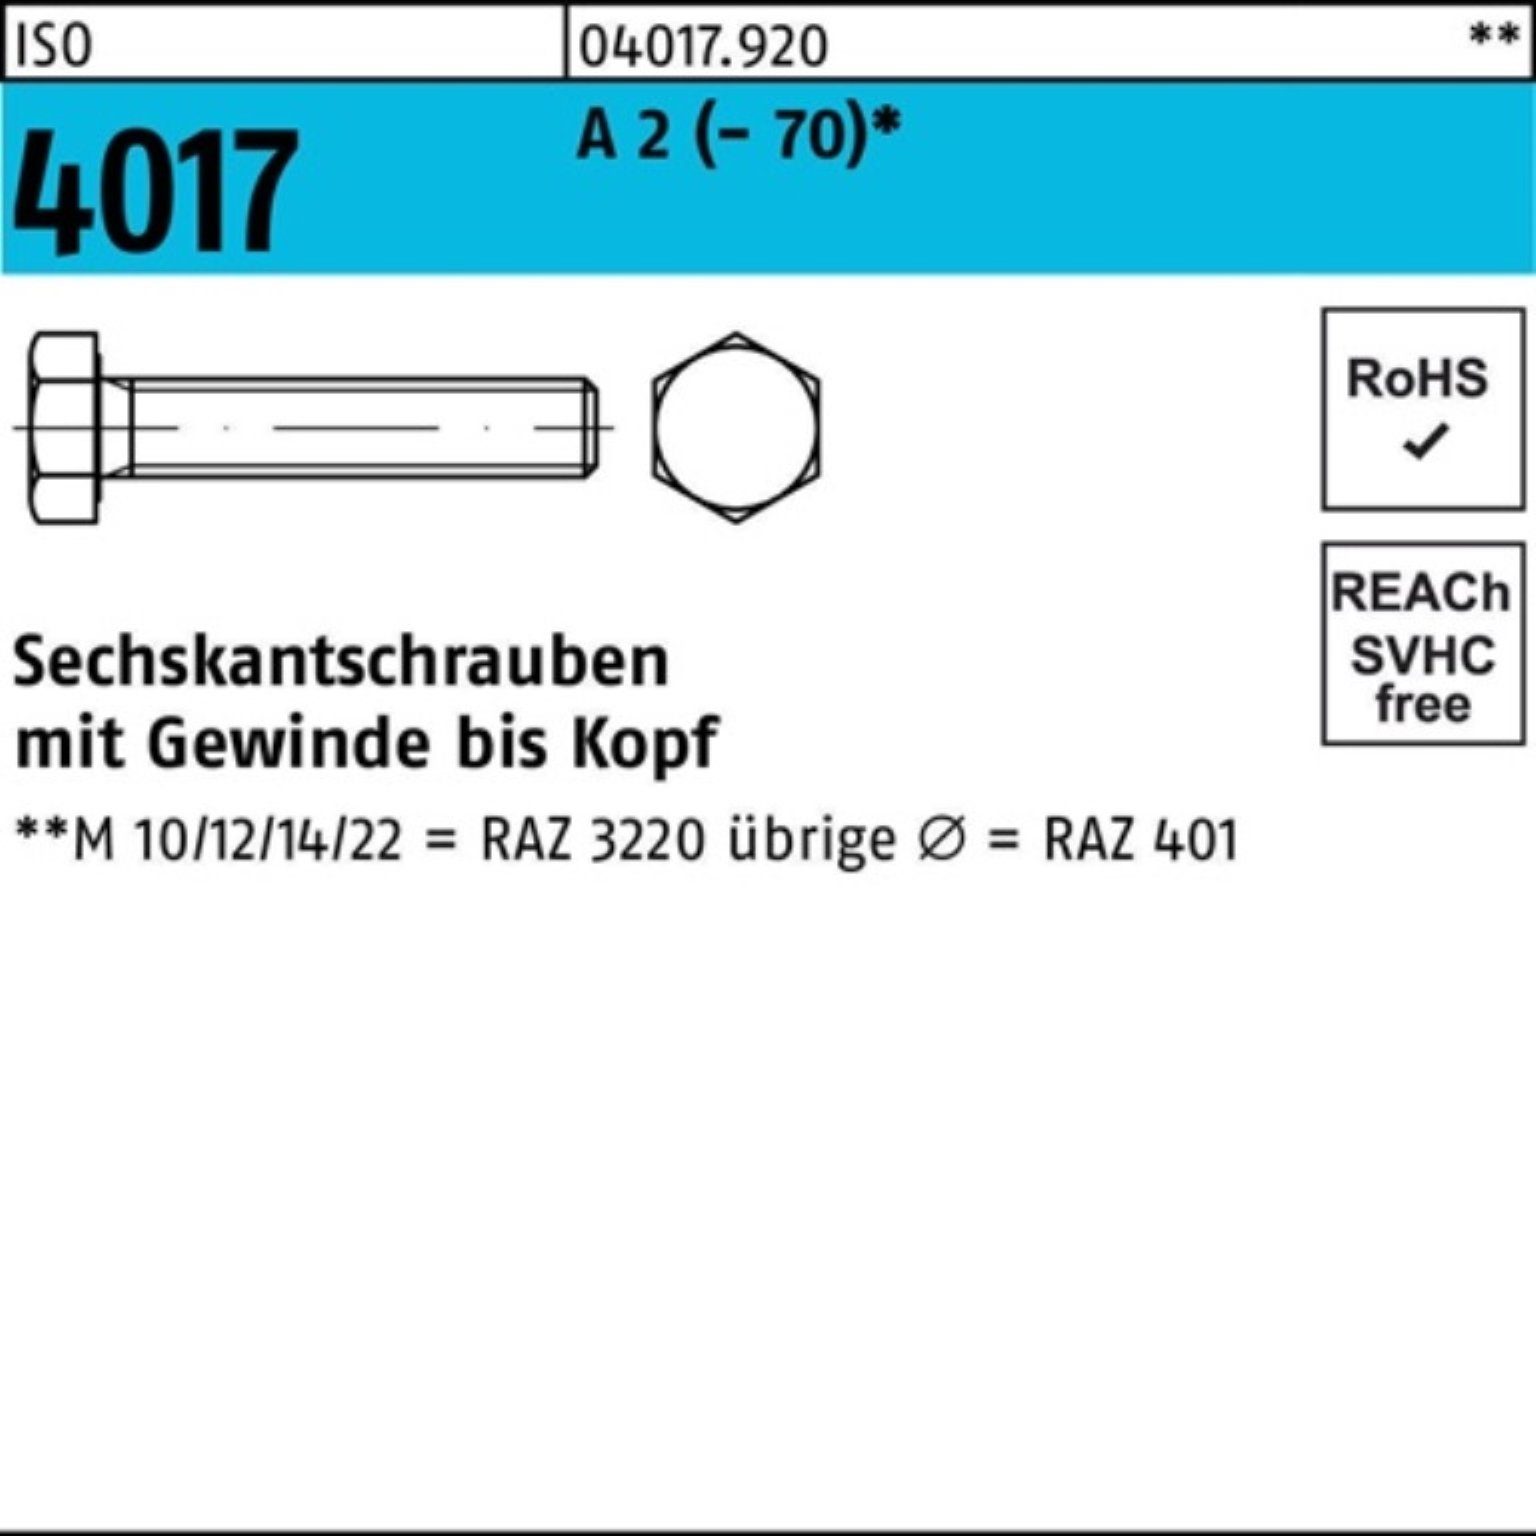 Bufab Sechskantschraube 100er Pack Sechskantschraube ISO 4017 VG M14x 20 A 2 (70) 50 Stück